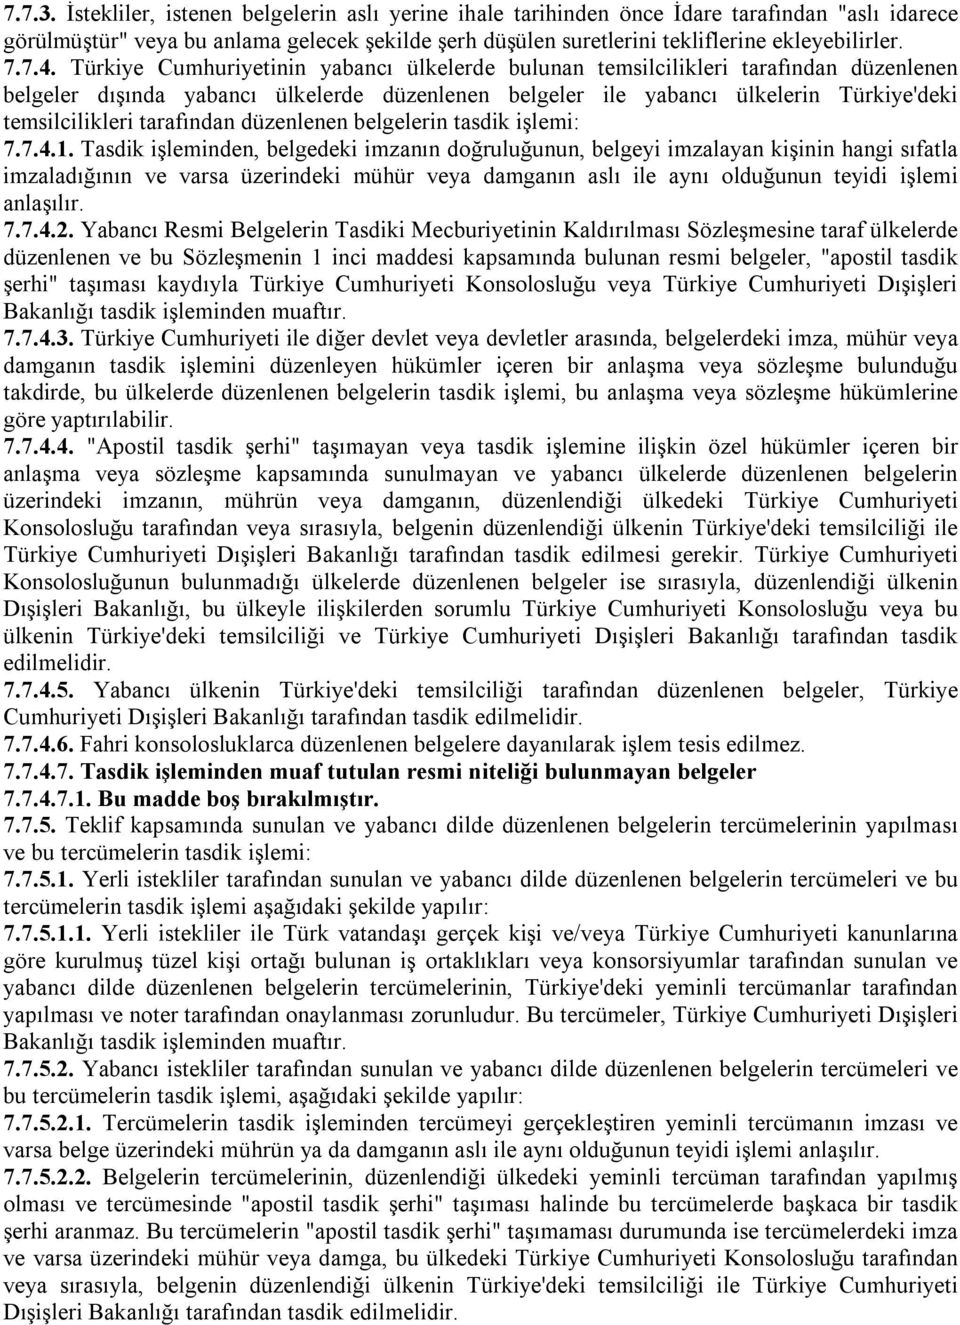 Türkiye Cumhuriyetinin yabancı ülkelerde bulunan temsilcilikleri tarafından düzenlenen belgeler dışında yabancı ülkelerde düzenlenen belgeler ile yabancı ülkelerin Türkiye'deki temsilcilikleri